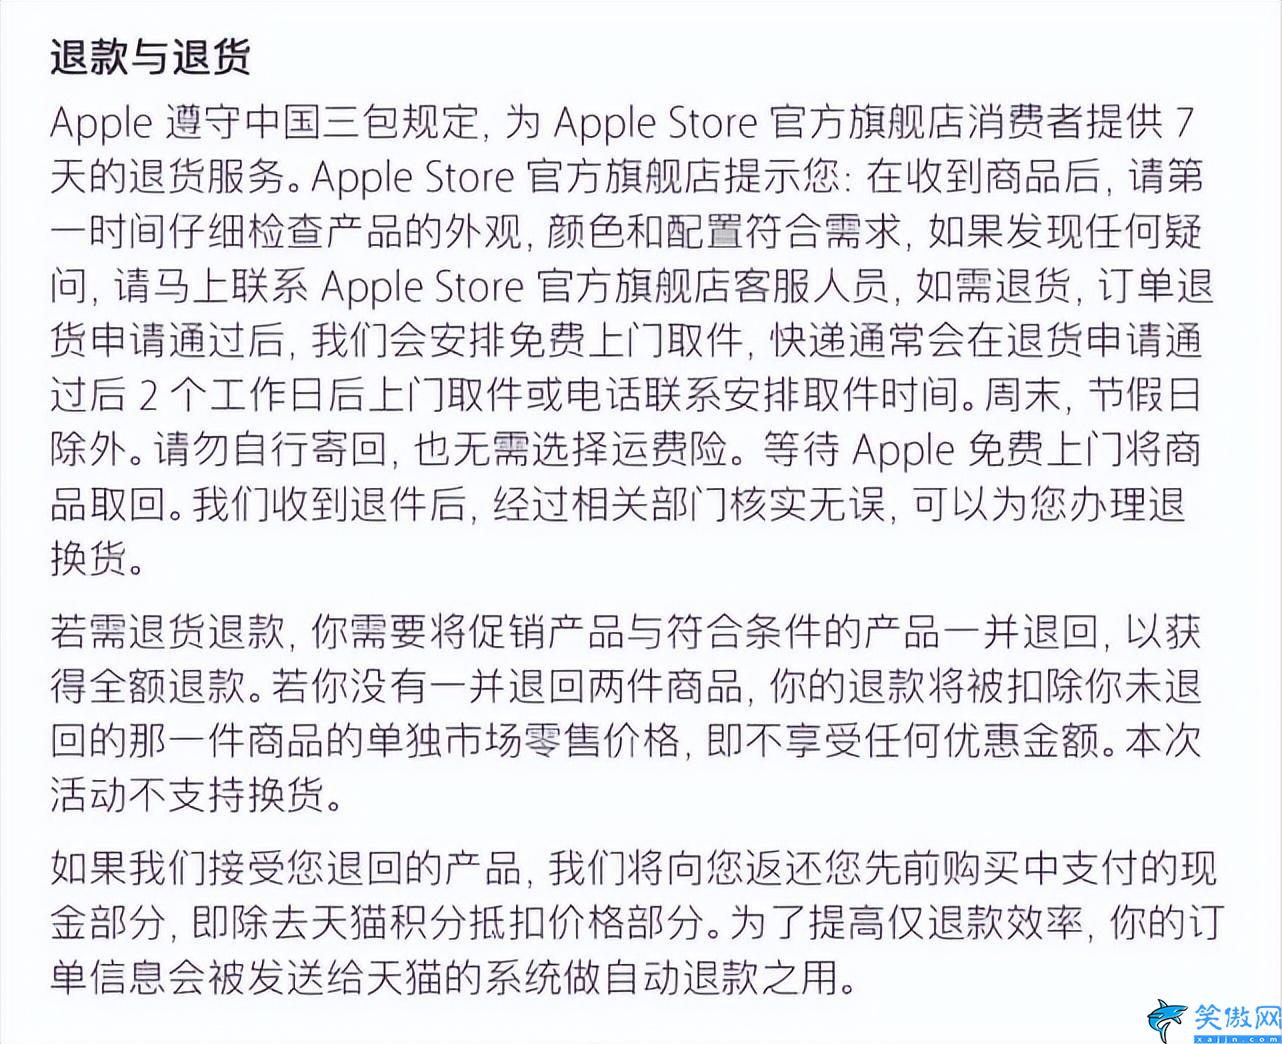 成都苹果直营店退货流程,苹果最全退换货步骤详情